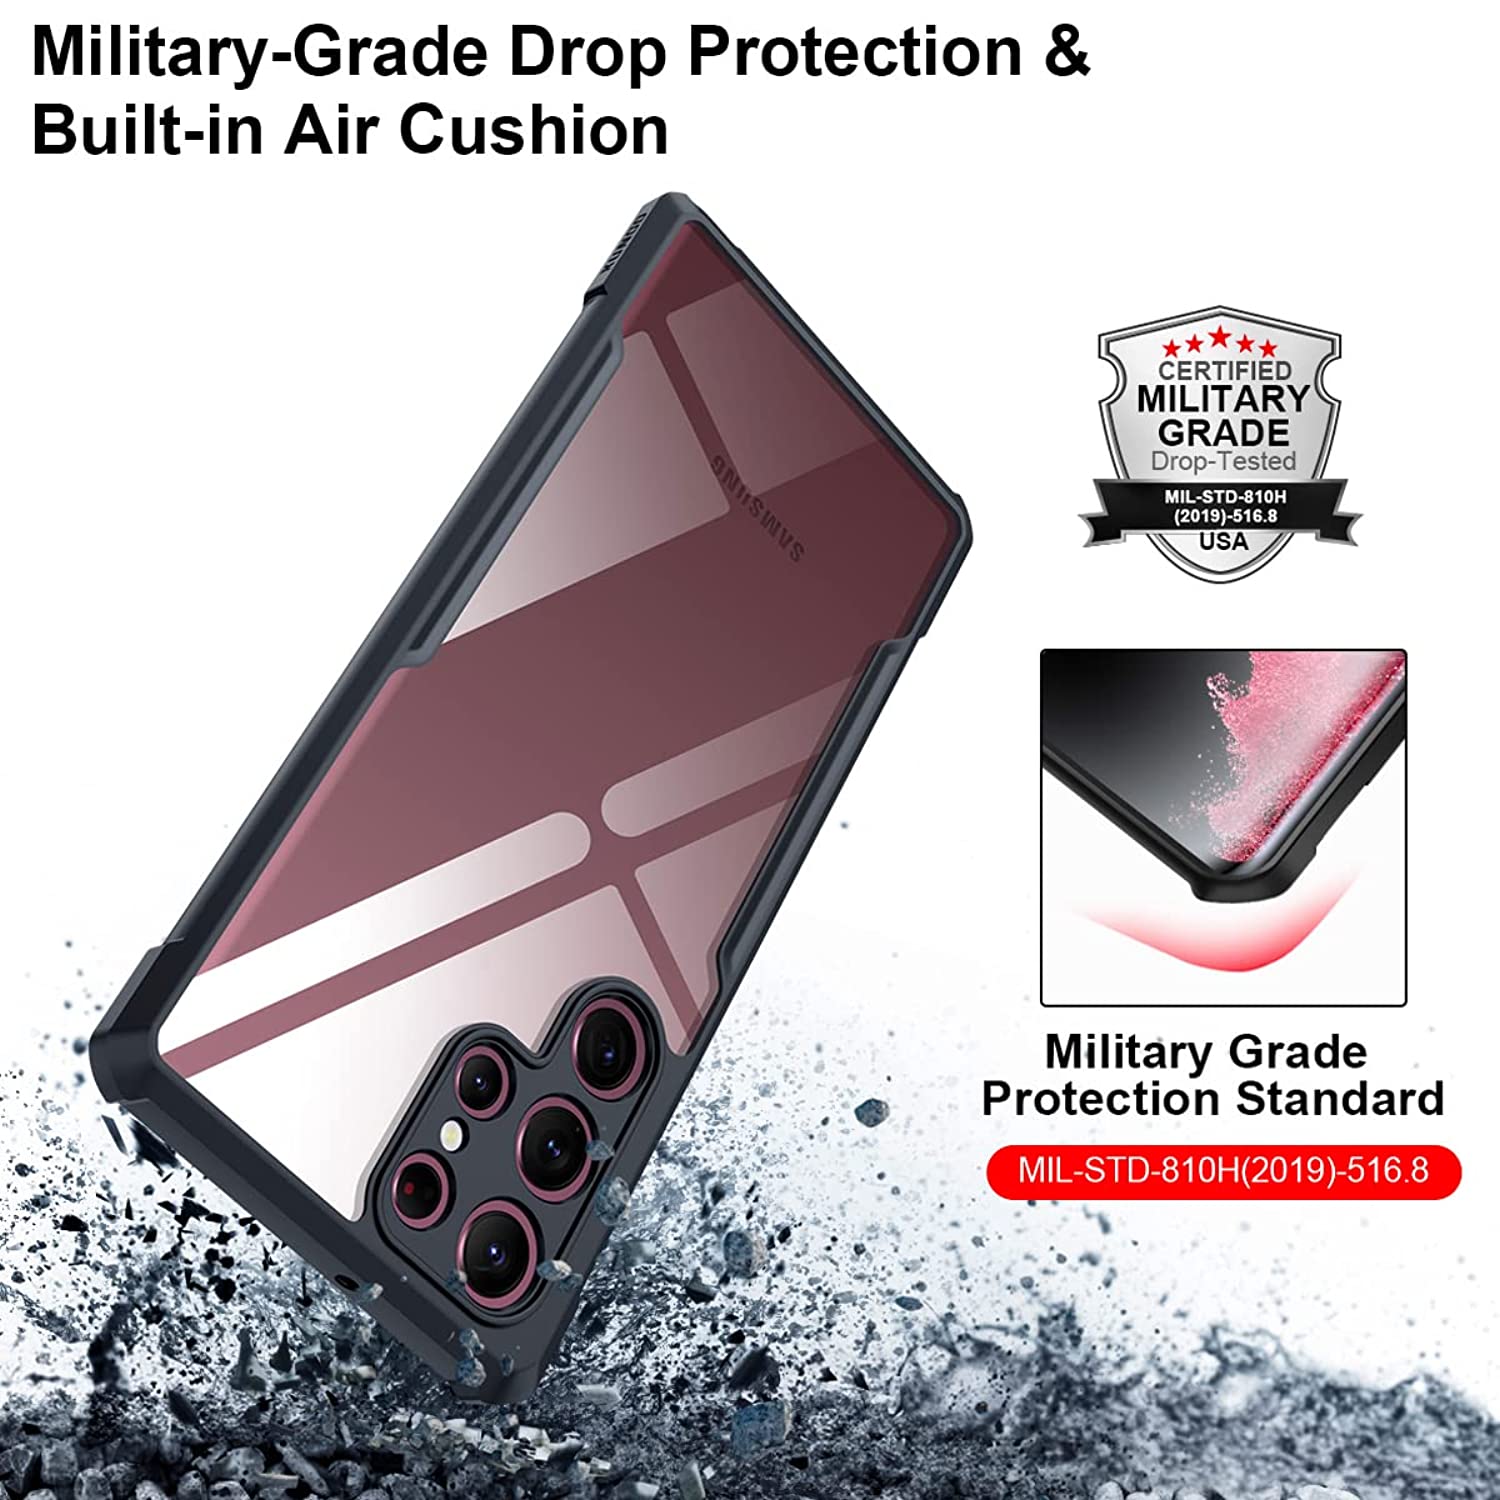 Ốp lưng chống sốc cho Samsung Galaxy S22 / S22 Plus / S22 Ultra hiệu Xundd Fitted Armor Case trang bị túi khí bảo vệ góc, gờ bảo vệ camera - hàng nhập khẩu